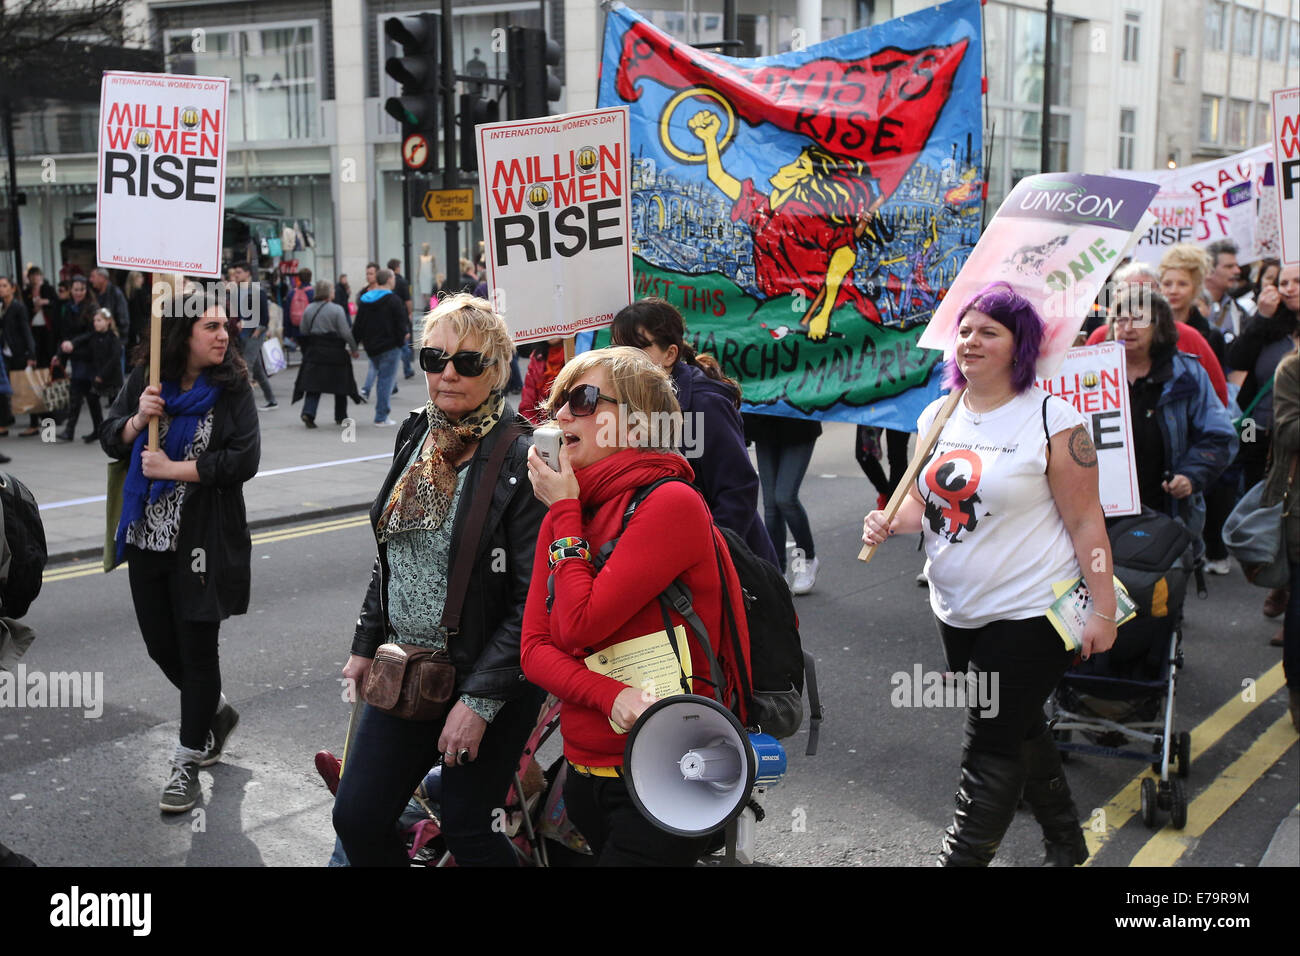 Millions de femmes Lieu mars à Londres pour marquer la Journée internationale de la femme où : London, Royaume-Uni Quand : 08 Mars 2014 Banque D'Images